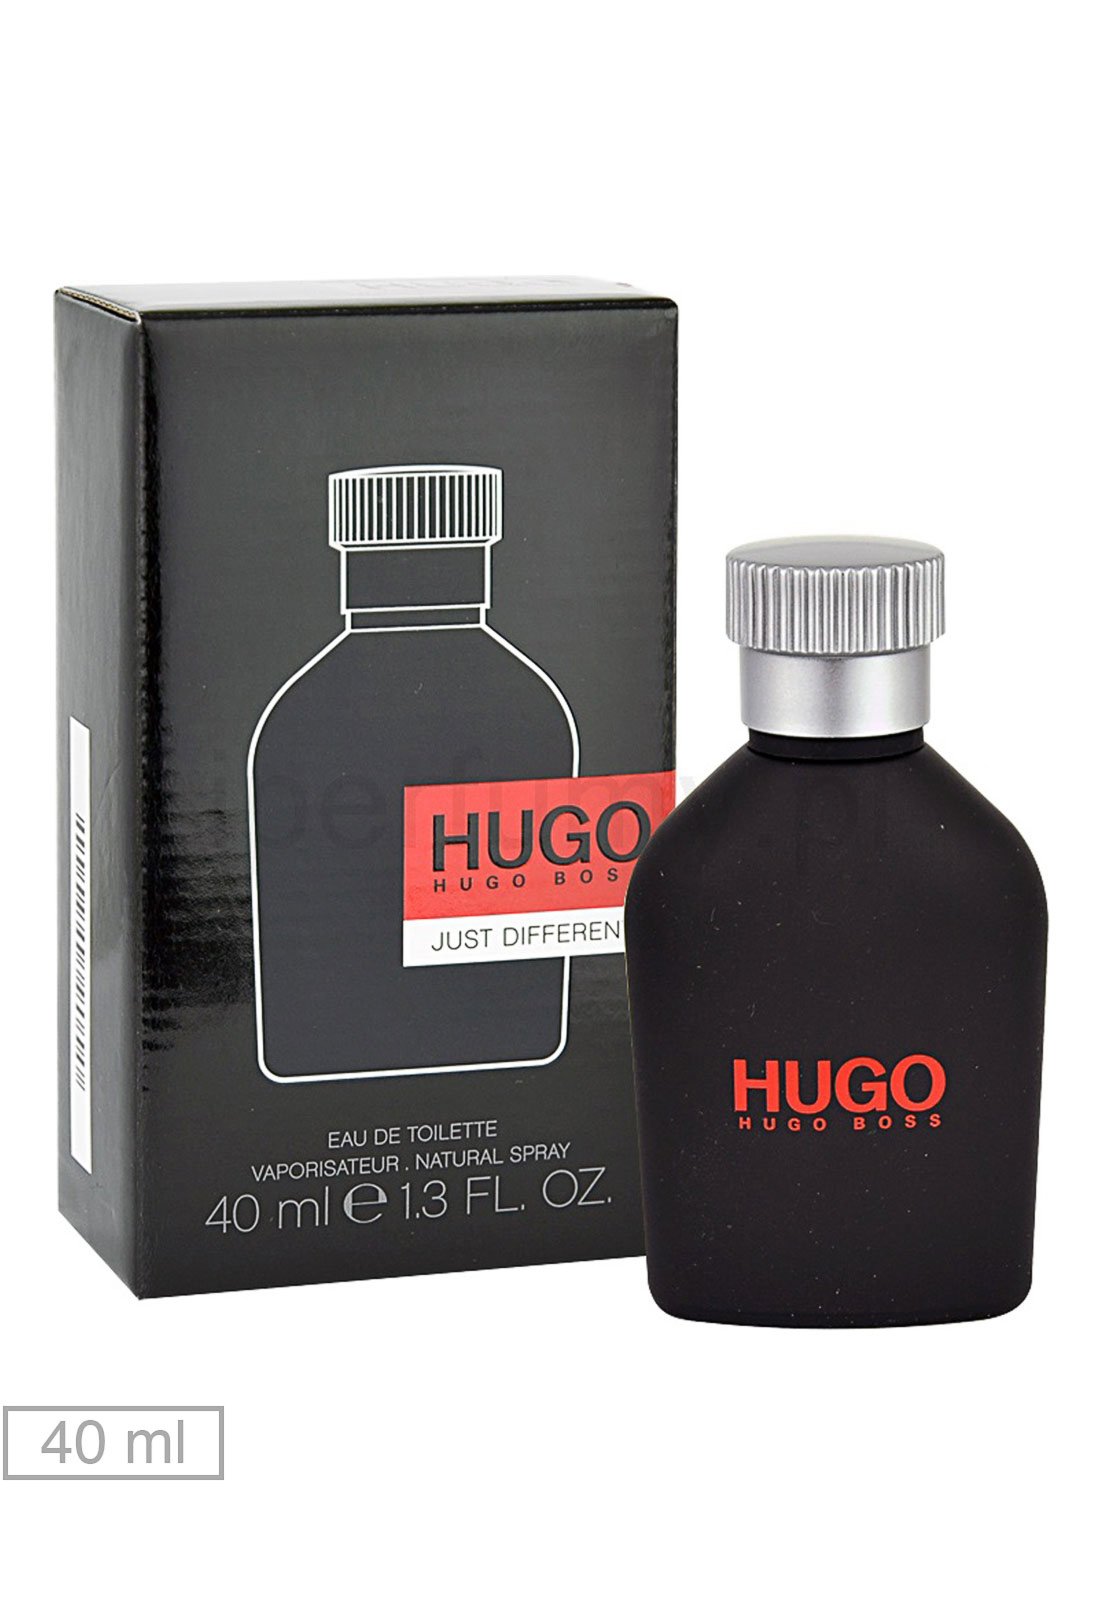 hugo boss 40 ml eau toilette